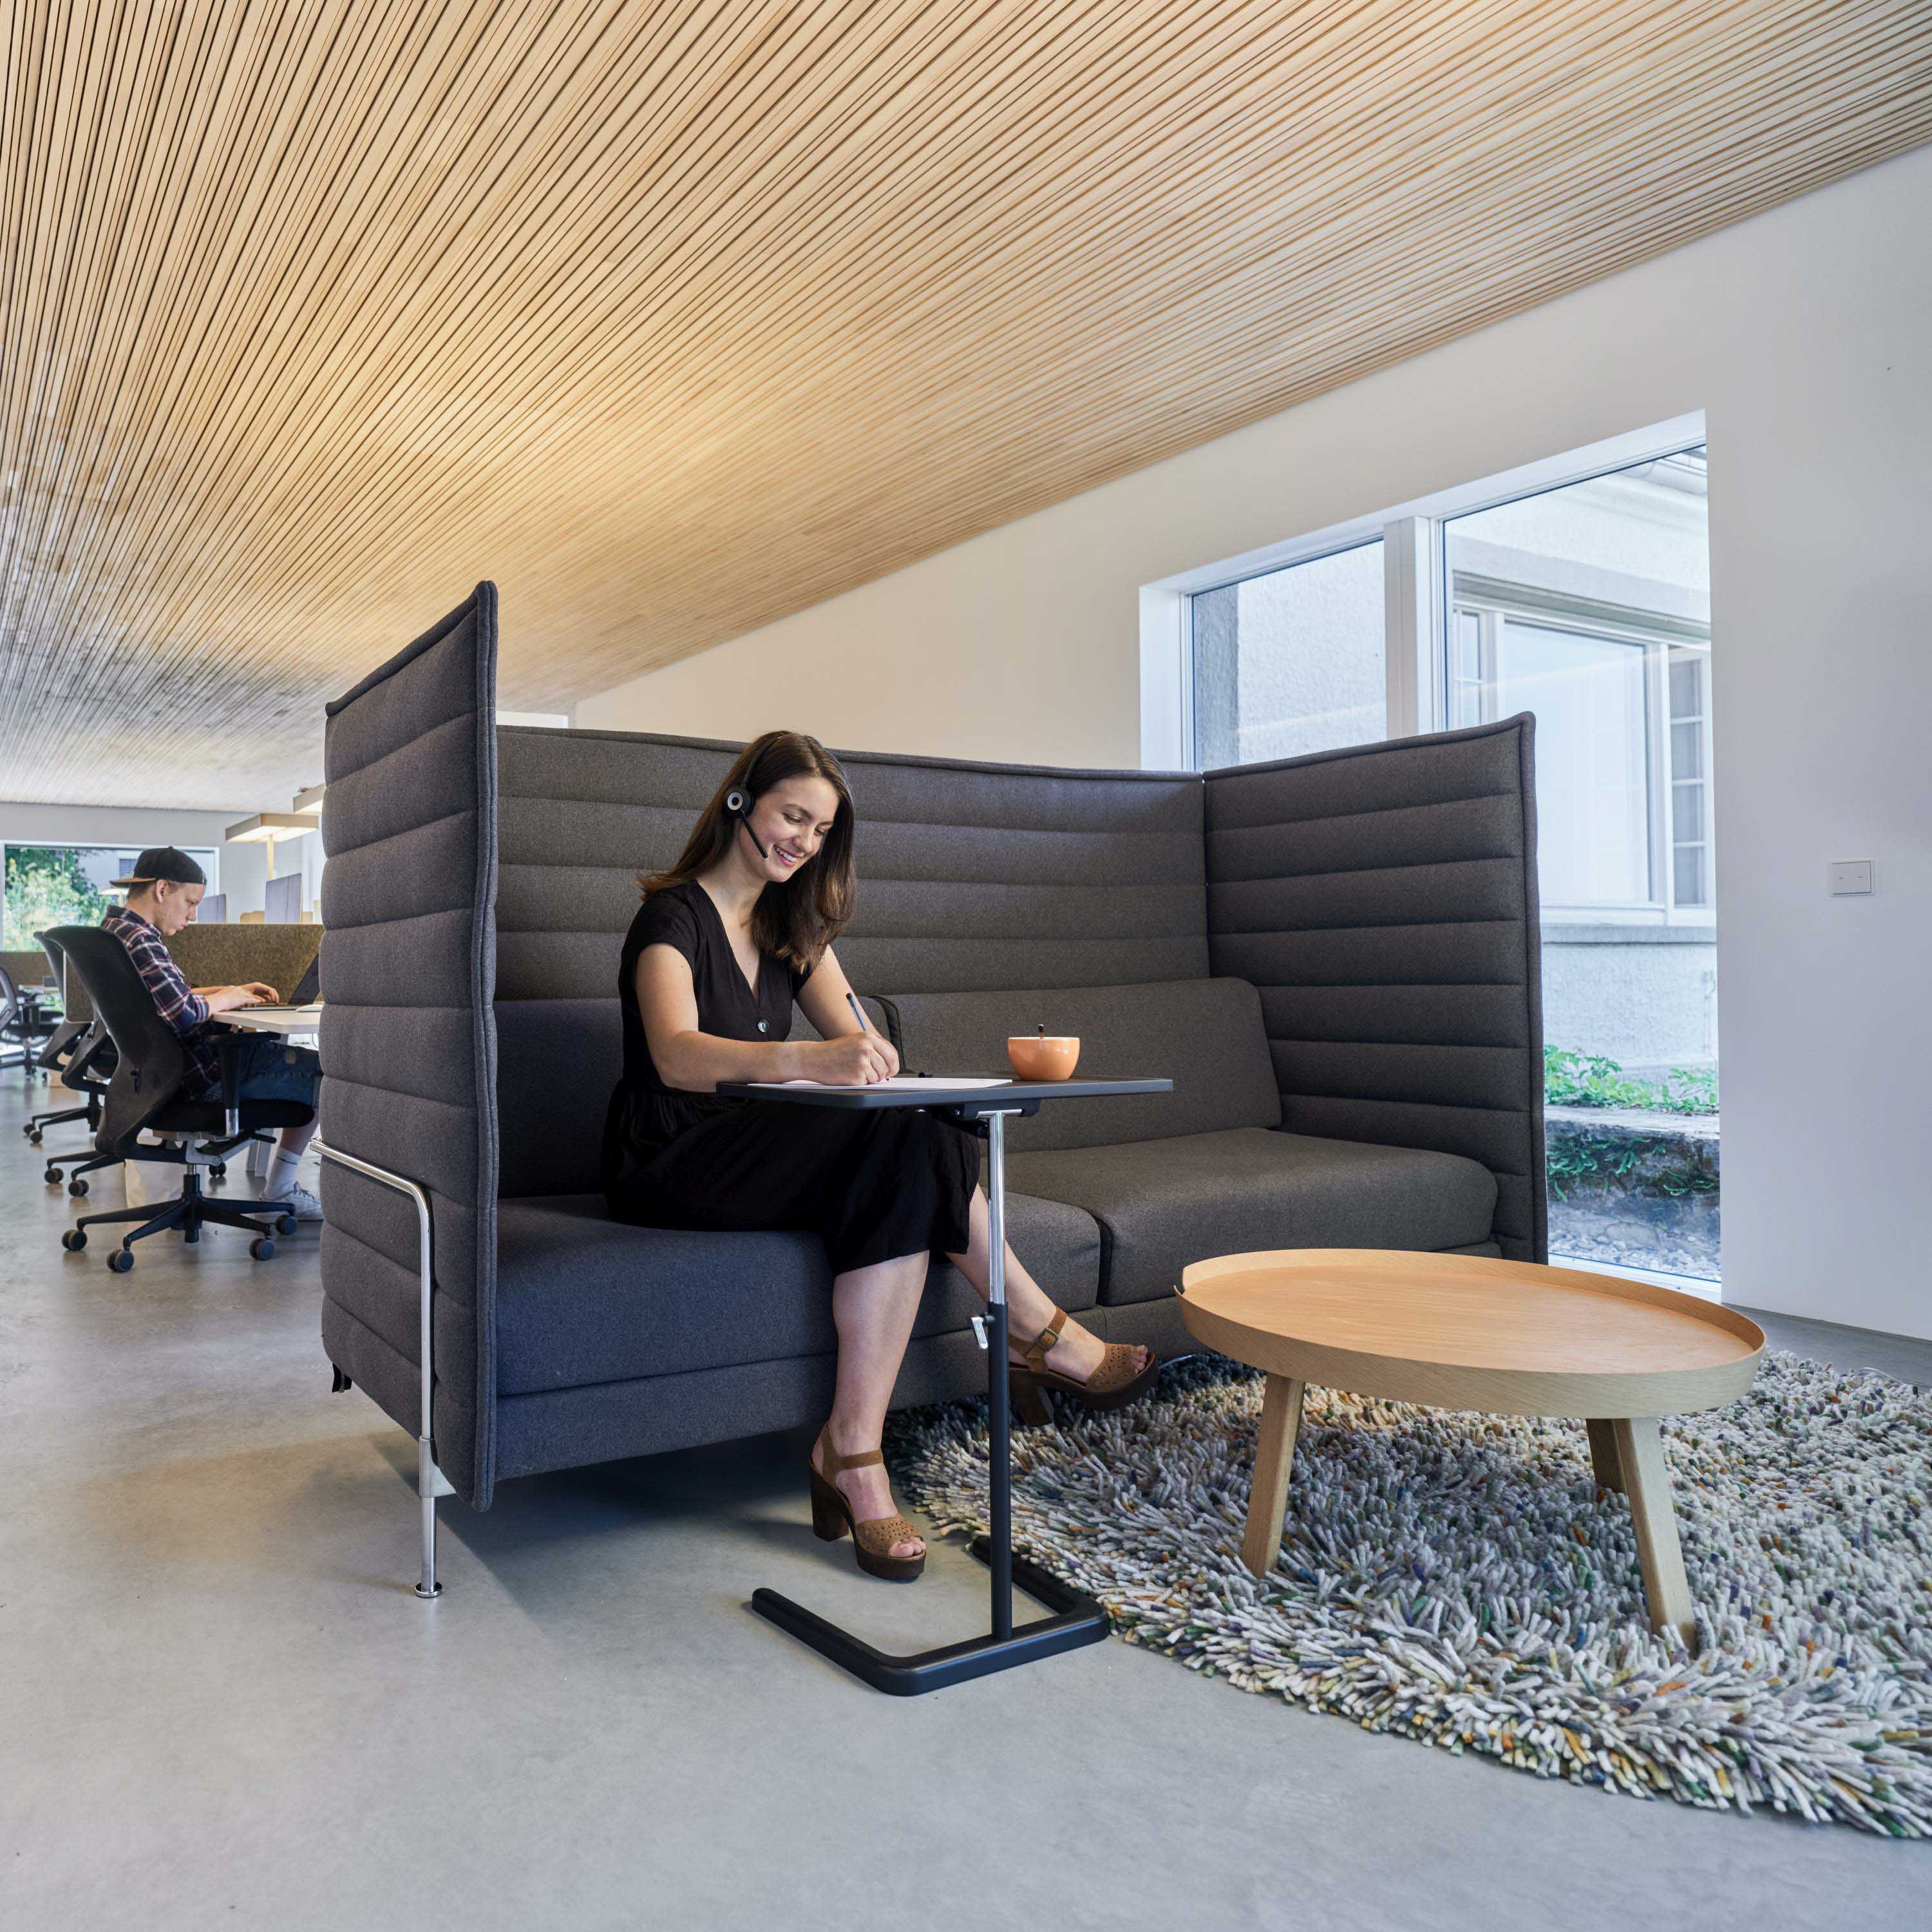 Lignotrend Akustikpaneele aus Holz mit dem prämierten 3D-Leistenprofil im Bürogebäude von Kommunikation und Design in Waldshut